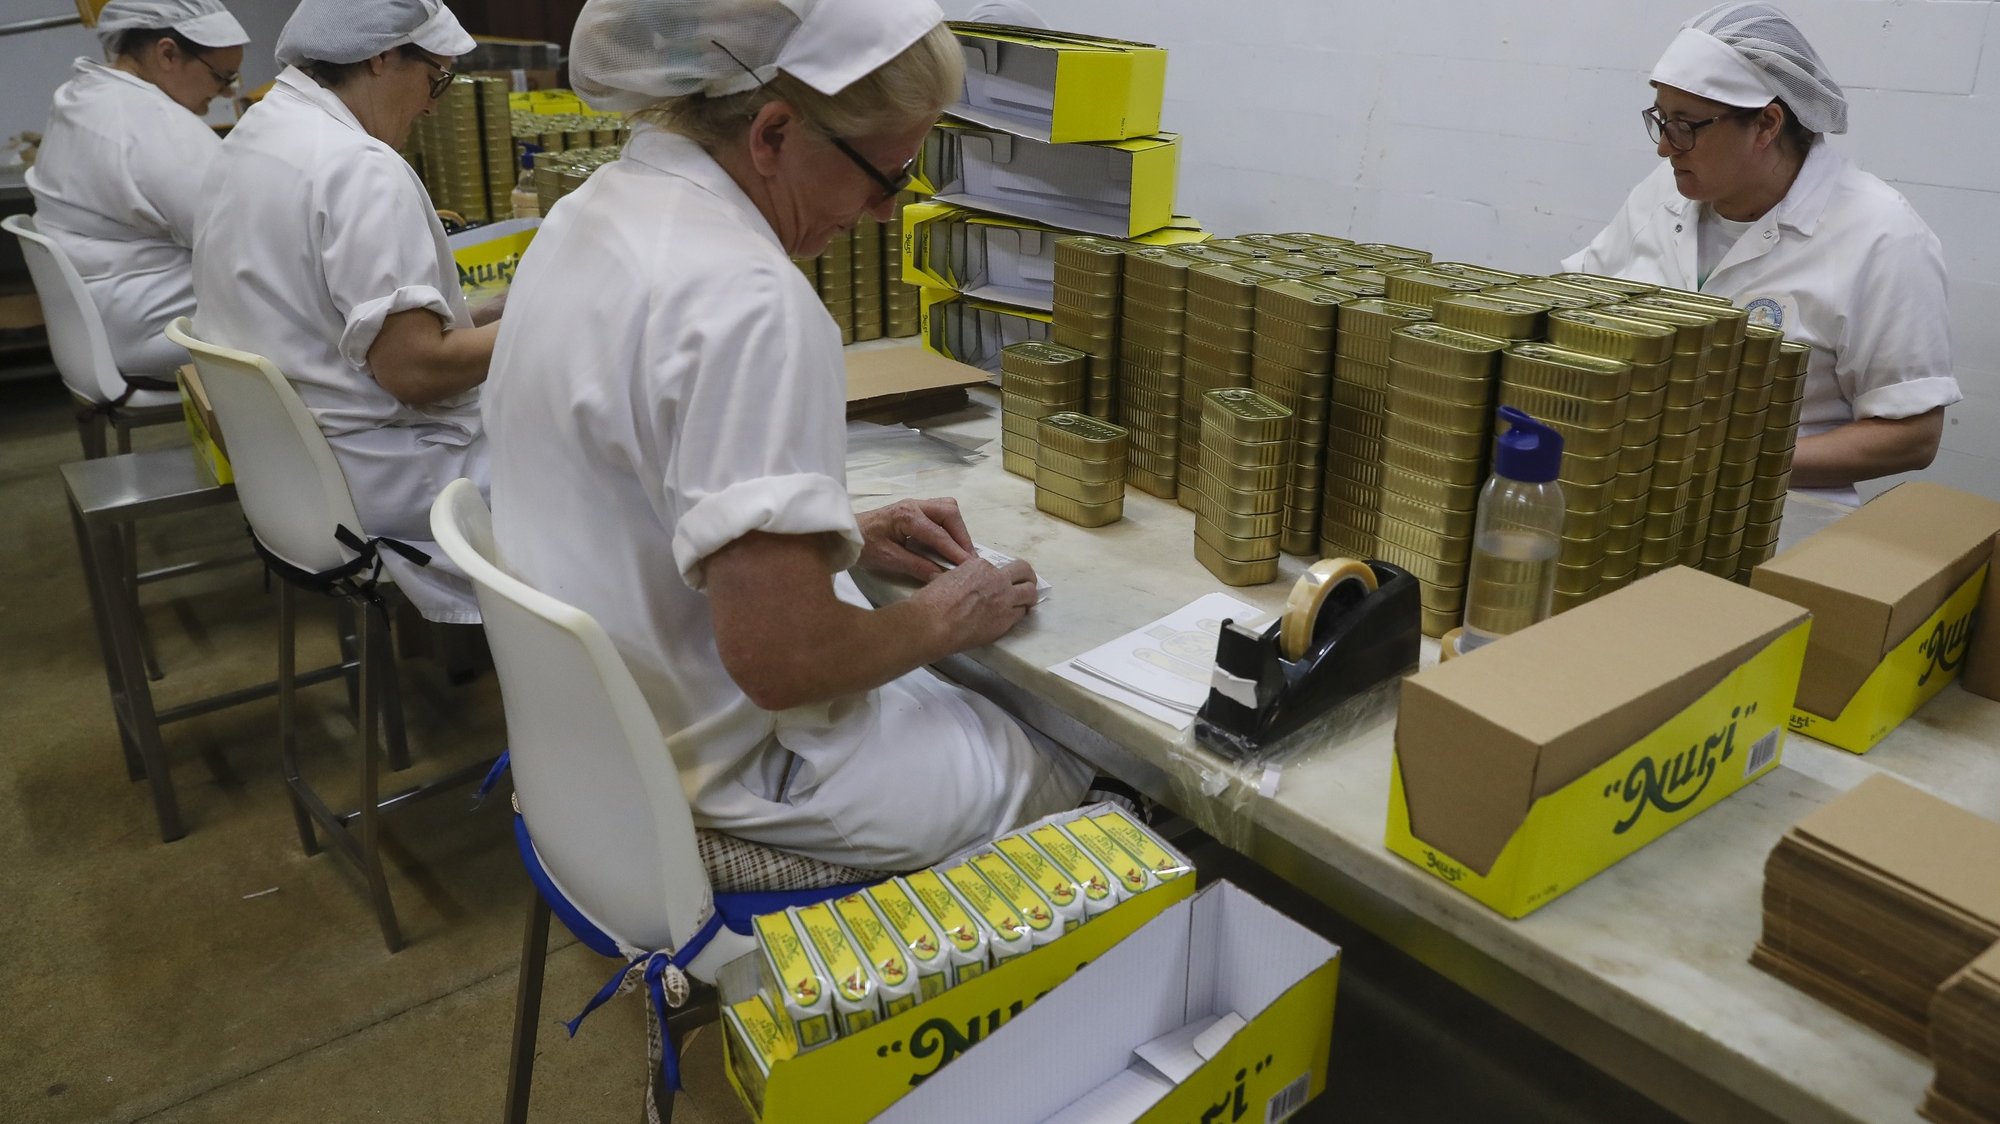 Trabalhadoras embalam conservas na conserveira Pinhais que faz 100 anos, sendo a única empresa do setor a manter método tradicional, em Matosinhos, 8 de setembro de 2020. (ACOMPANHA TEXTO DE 13/09/2020) JOSÉ COELHO/LUSA